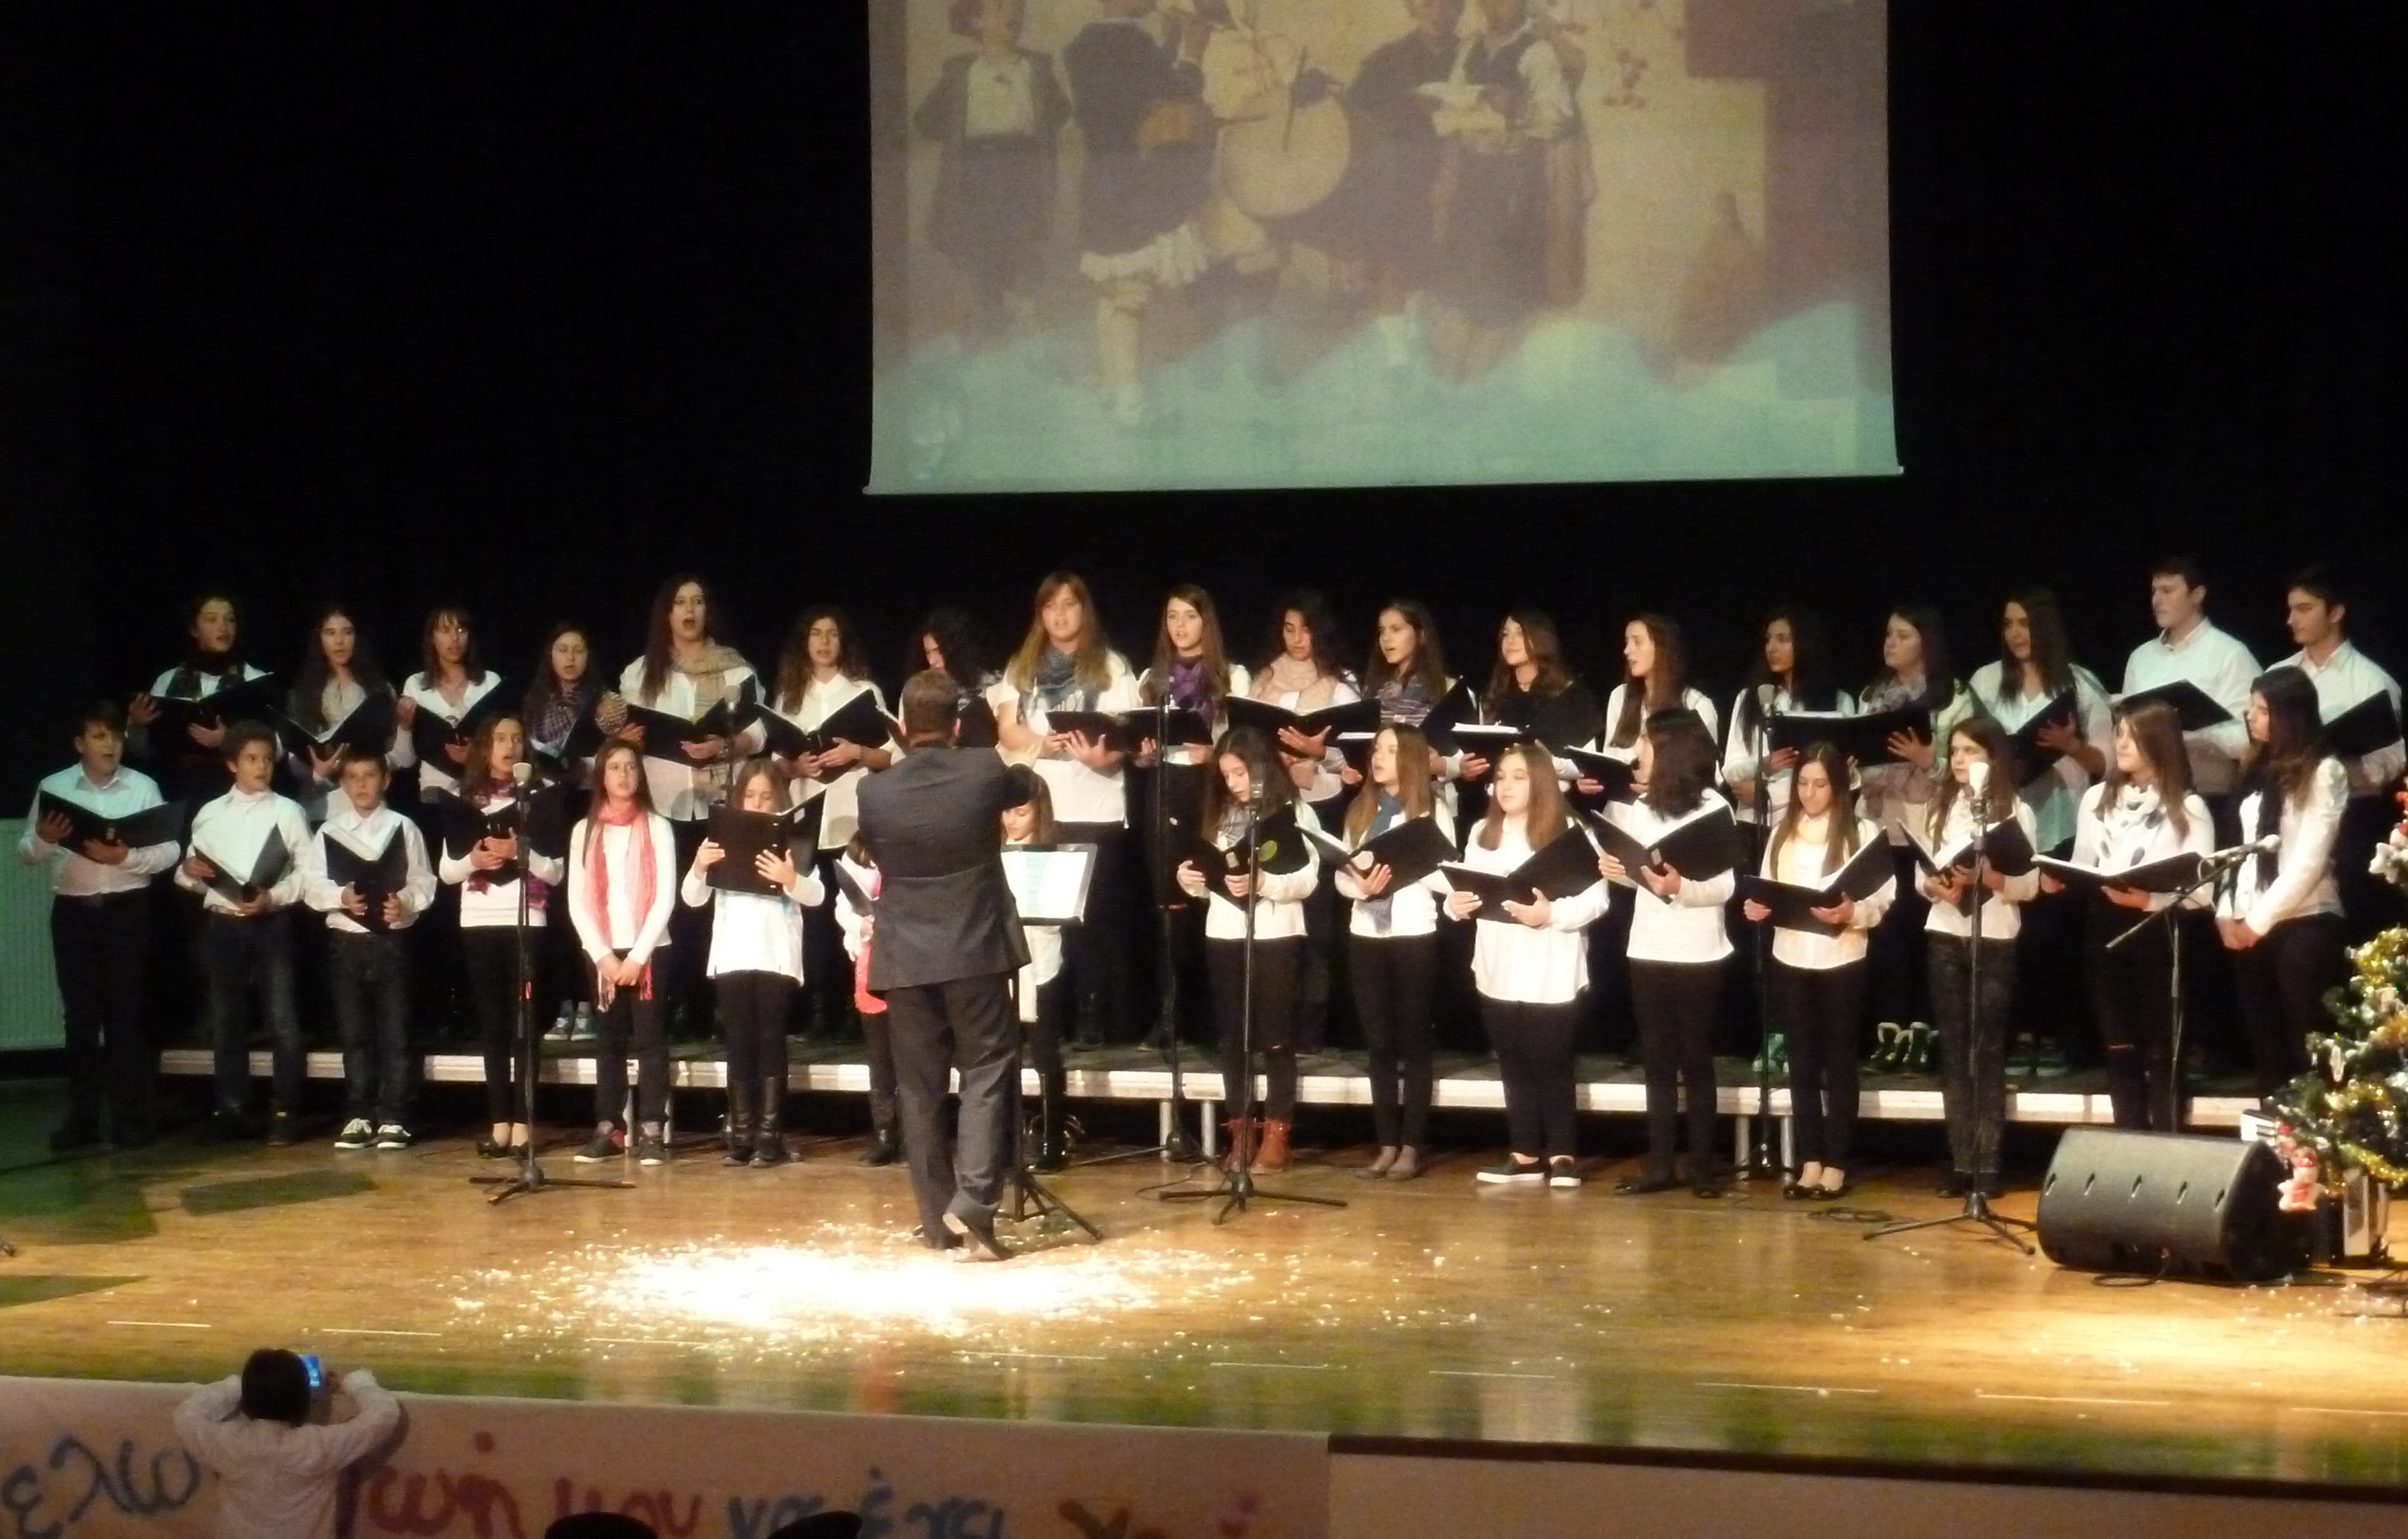  Στην Αθήνα η νεανική χορωδία “musicArte” του Μουσικού Συλλόγου Ελασσόνας